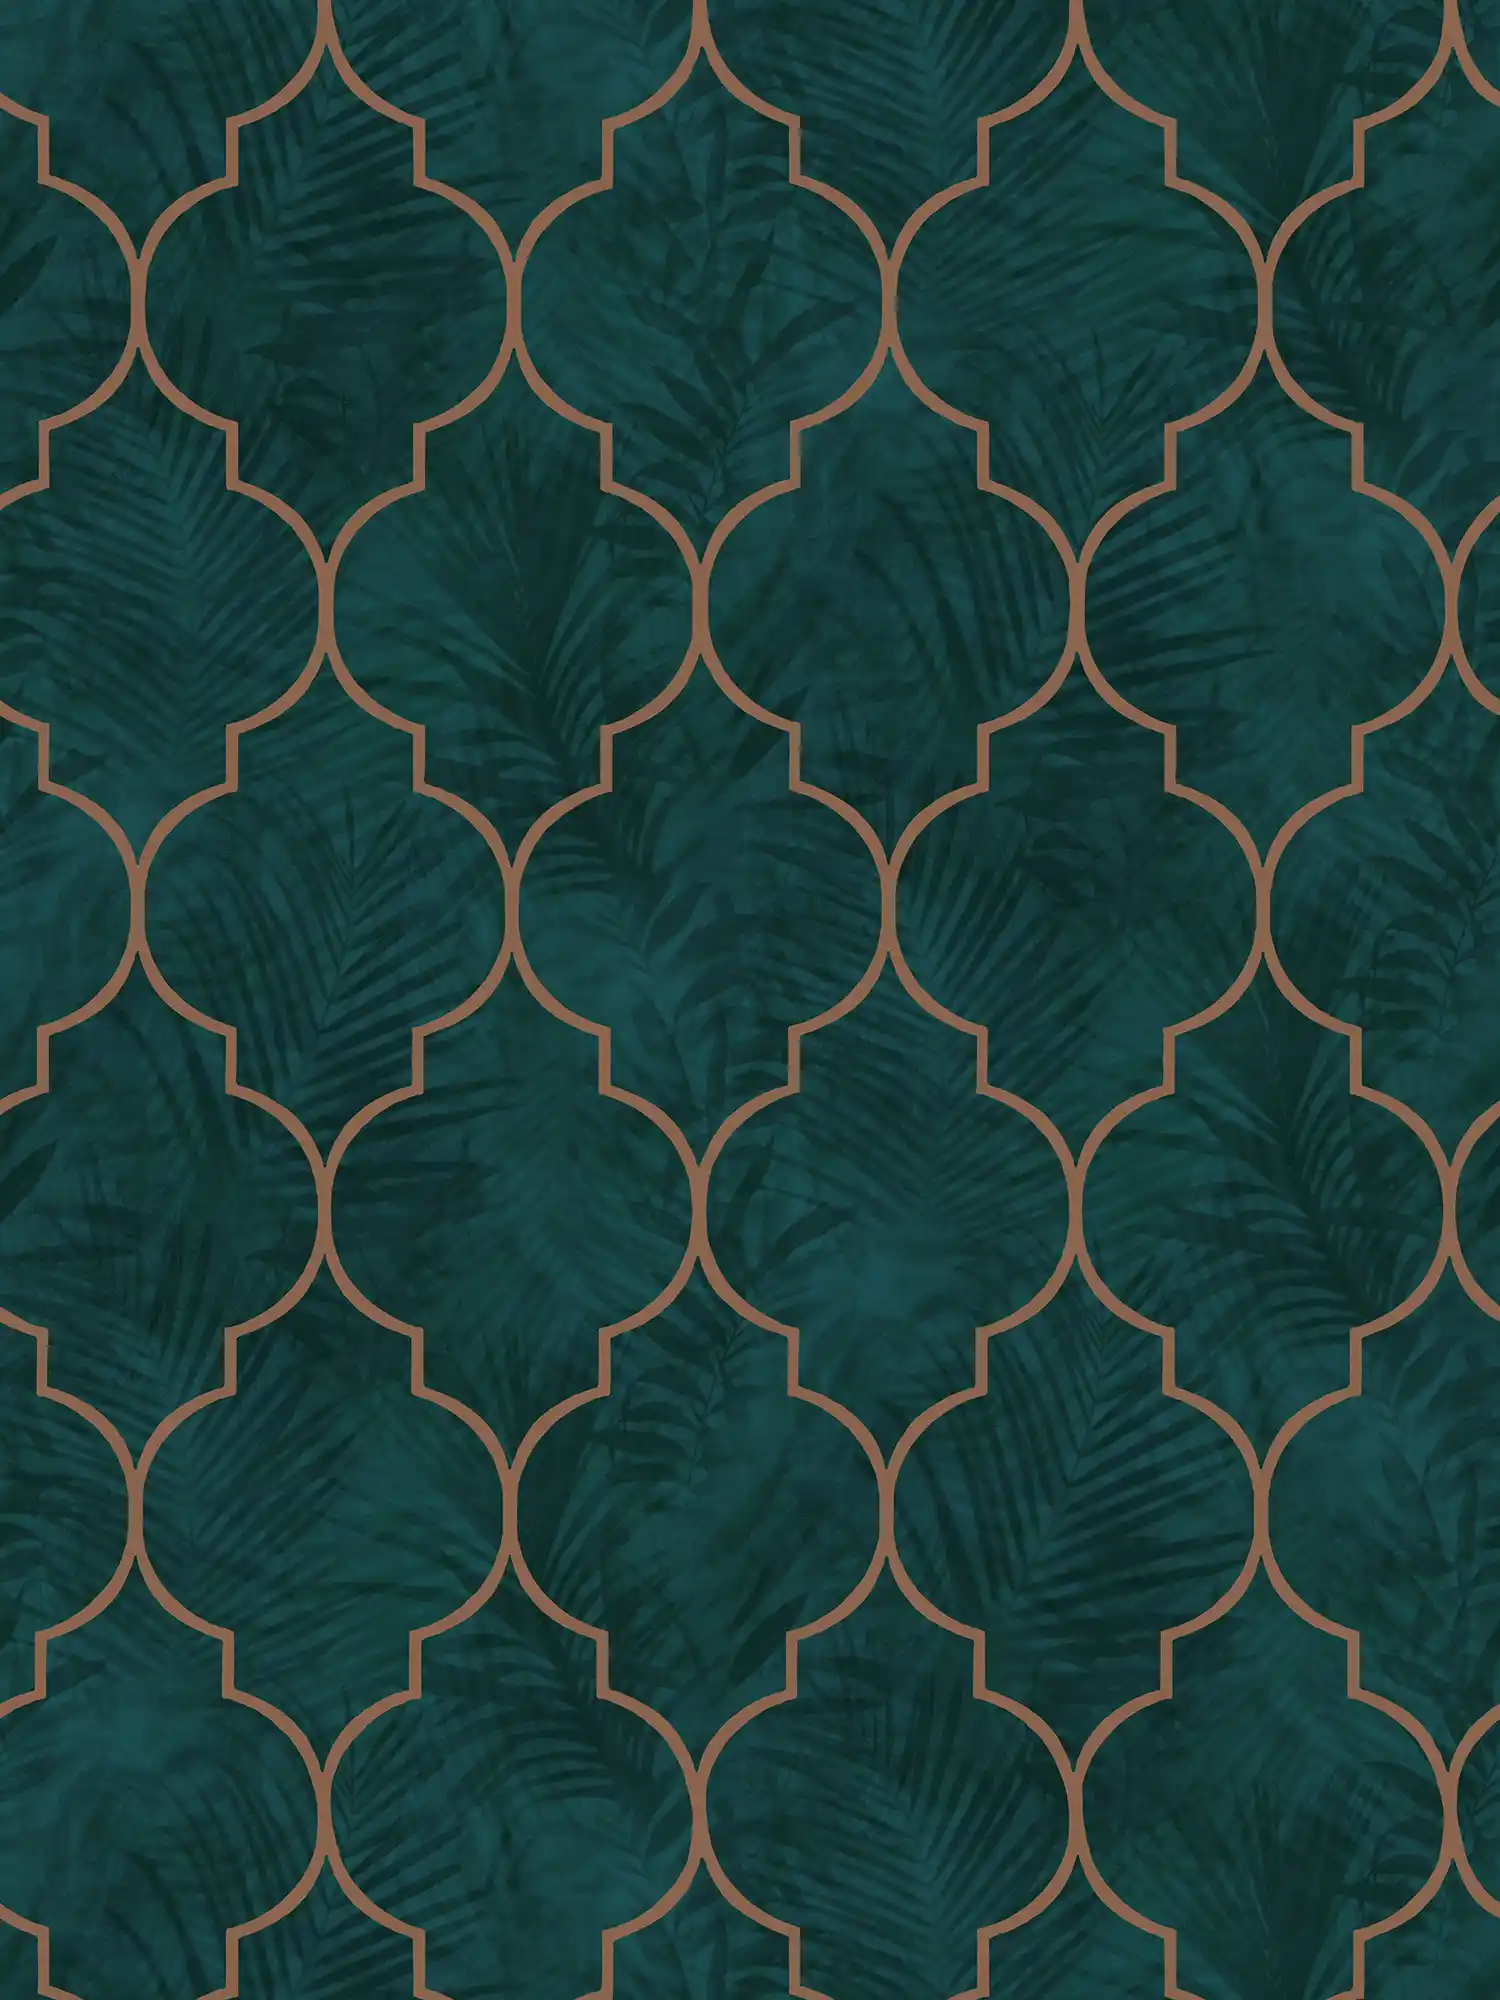 Papel pintado de azulejos con ornamentos y hojas - verde, turquesa, marrón
